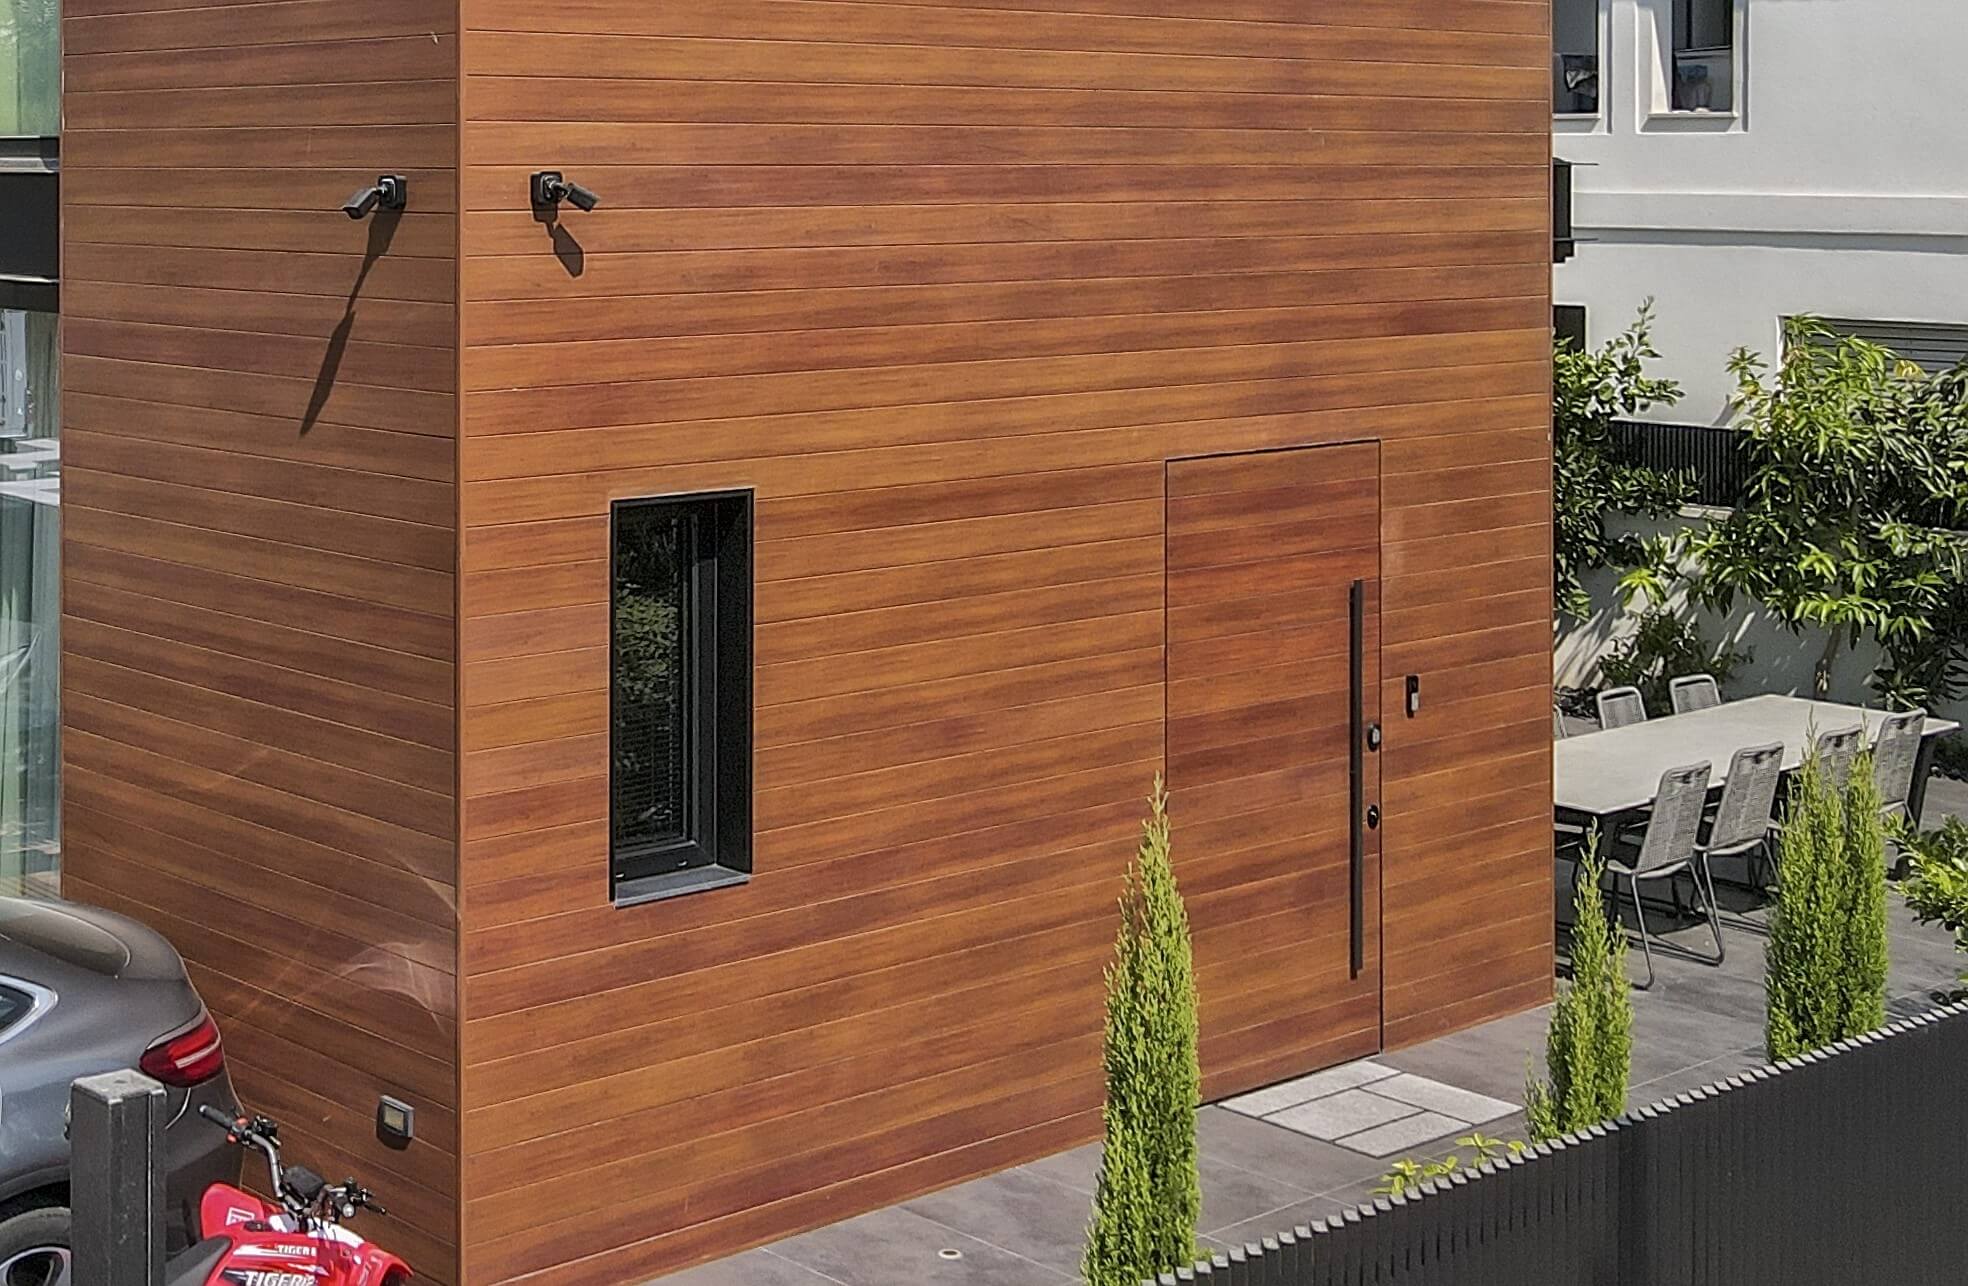 איך לבחור דלתות לבית מעץ